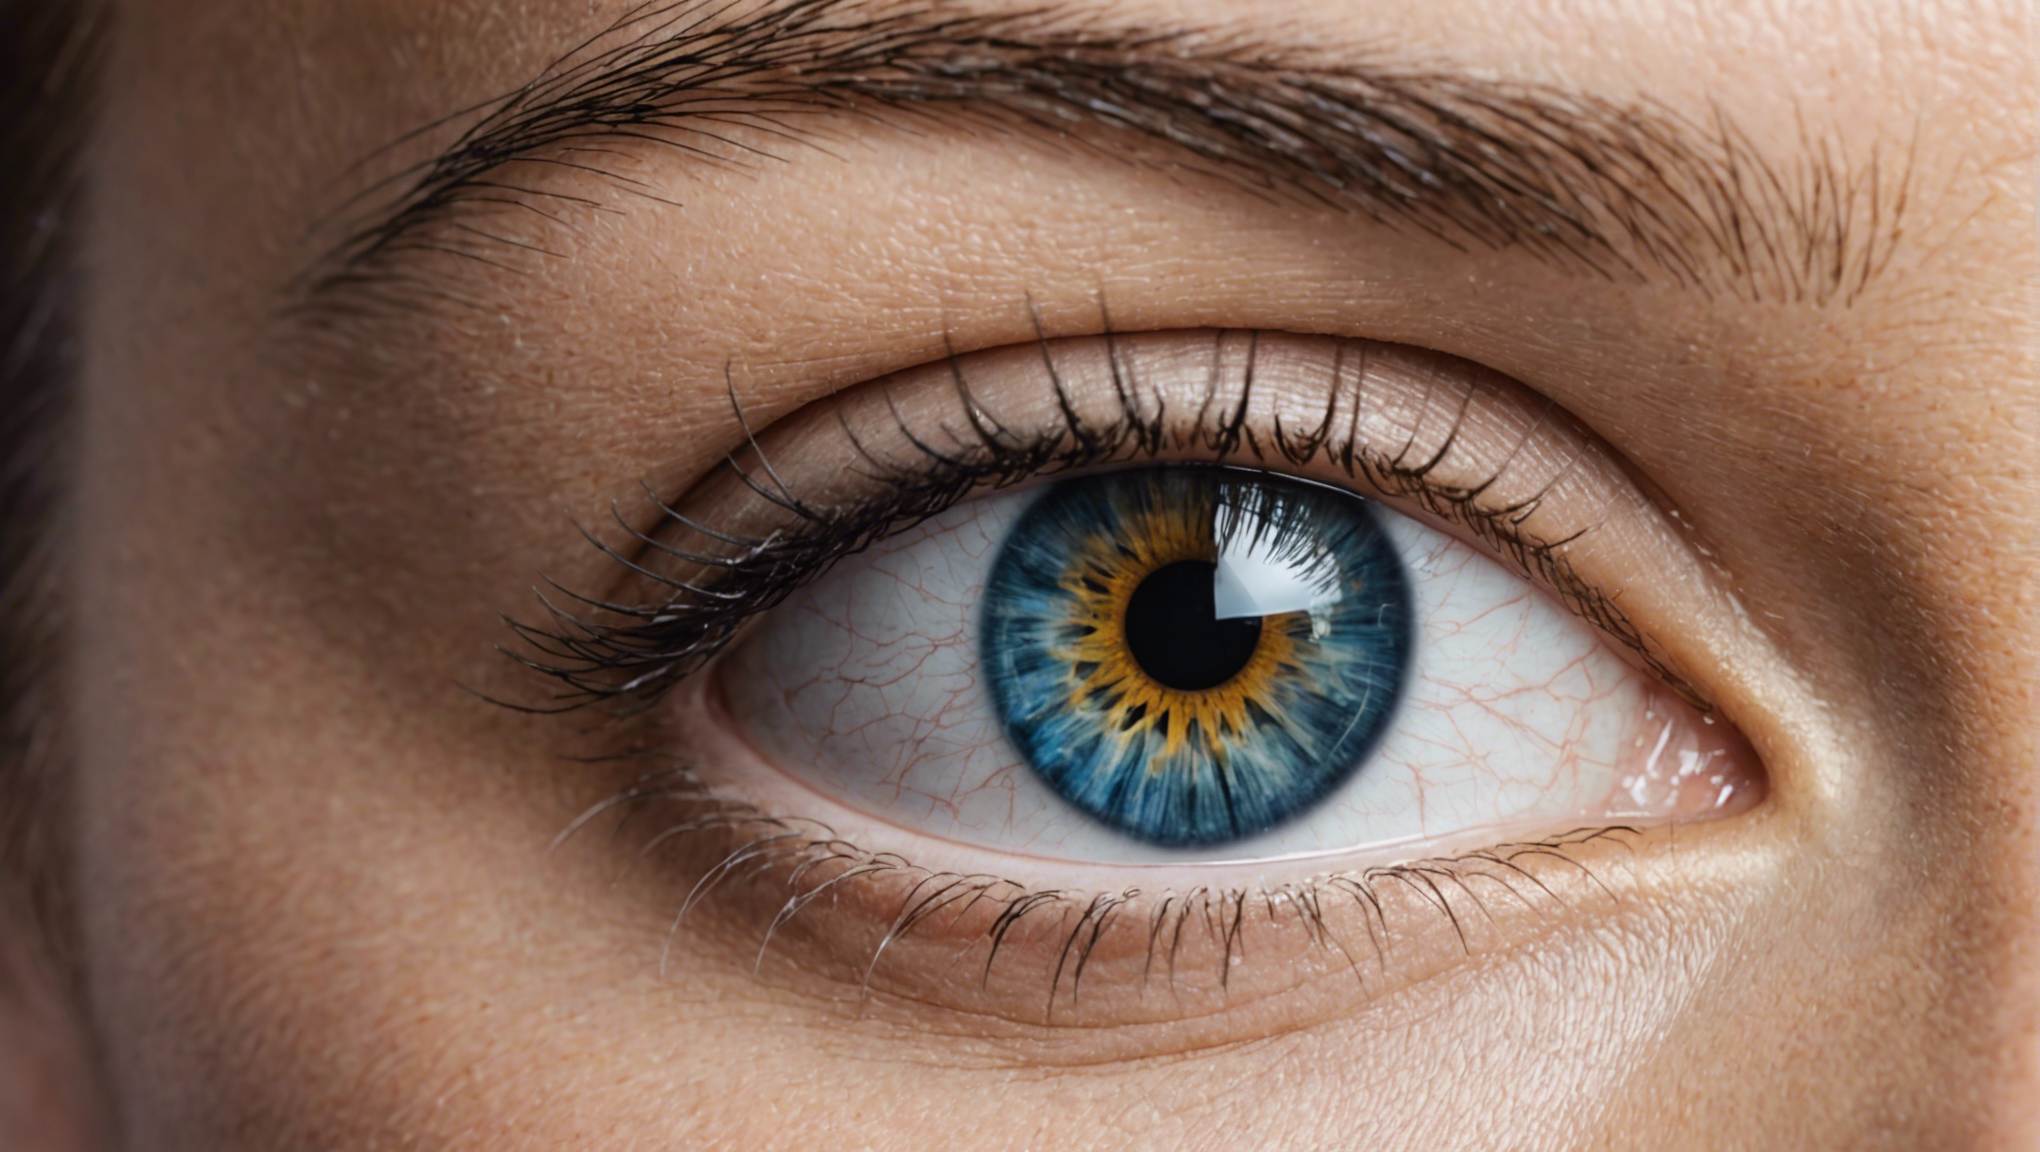 découvrez les programmes d'aide financière pour l'opération des yeux afin de bénéficier d'un soutien financier pour votre traitement ophtalmologique.